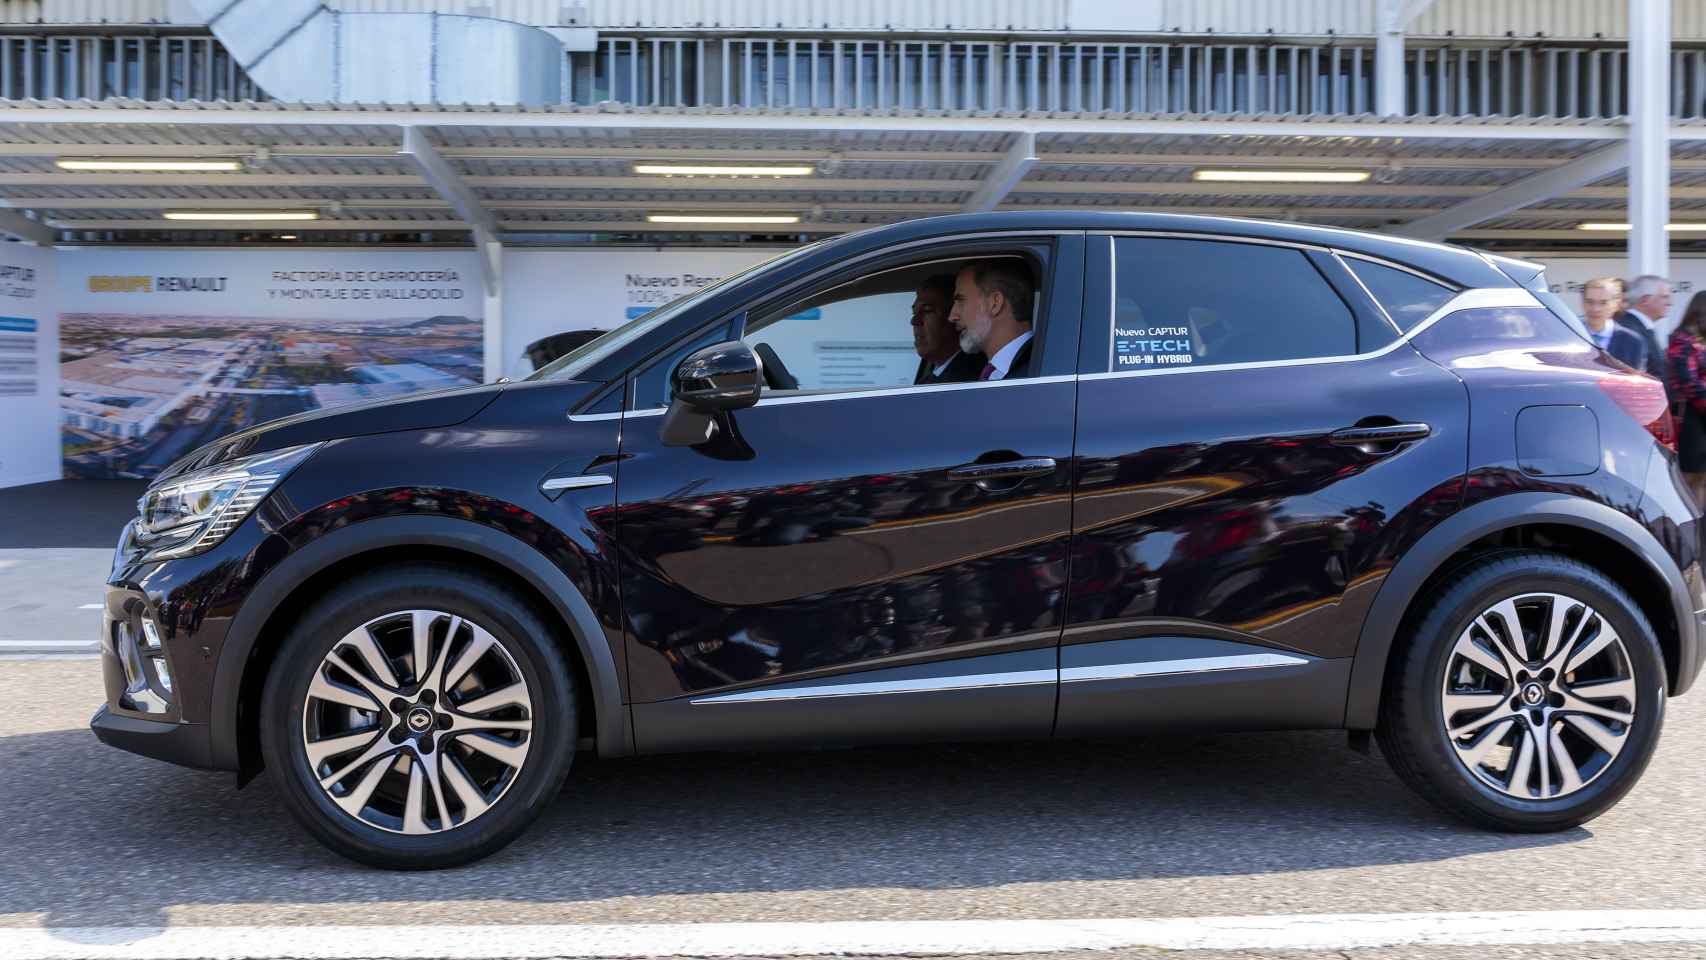 En la anterior visita del Rey, el monarca tuvo la oportunidad de conducir un coche.